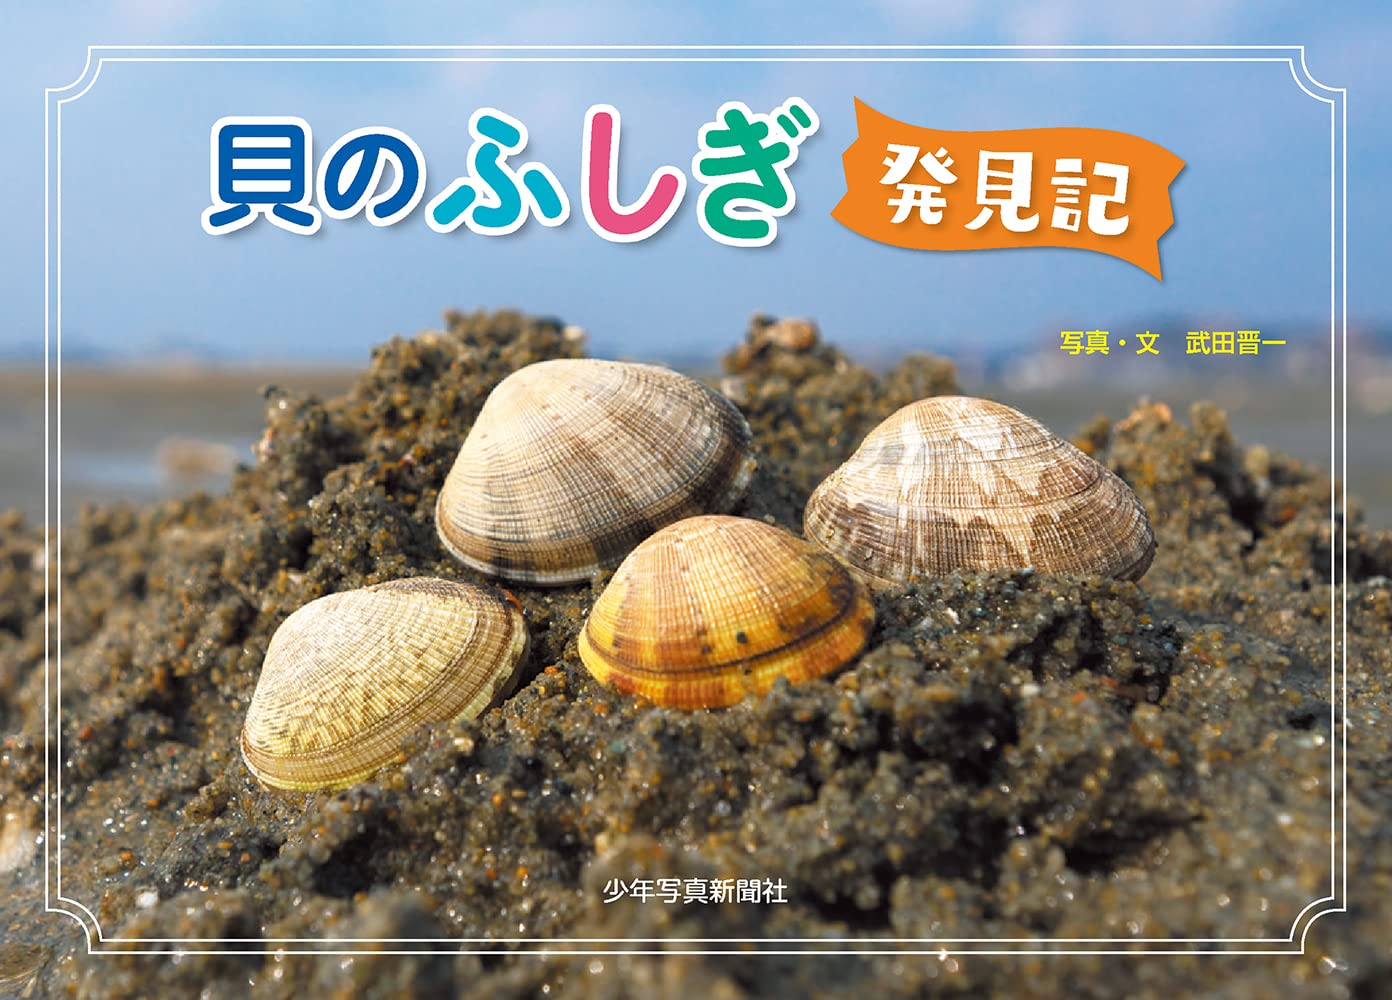 豊洲市場 銀鱗文庫で「貝のふしぎ発見記」写真展とレアな貝に触れる体験イベントを開催！